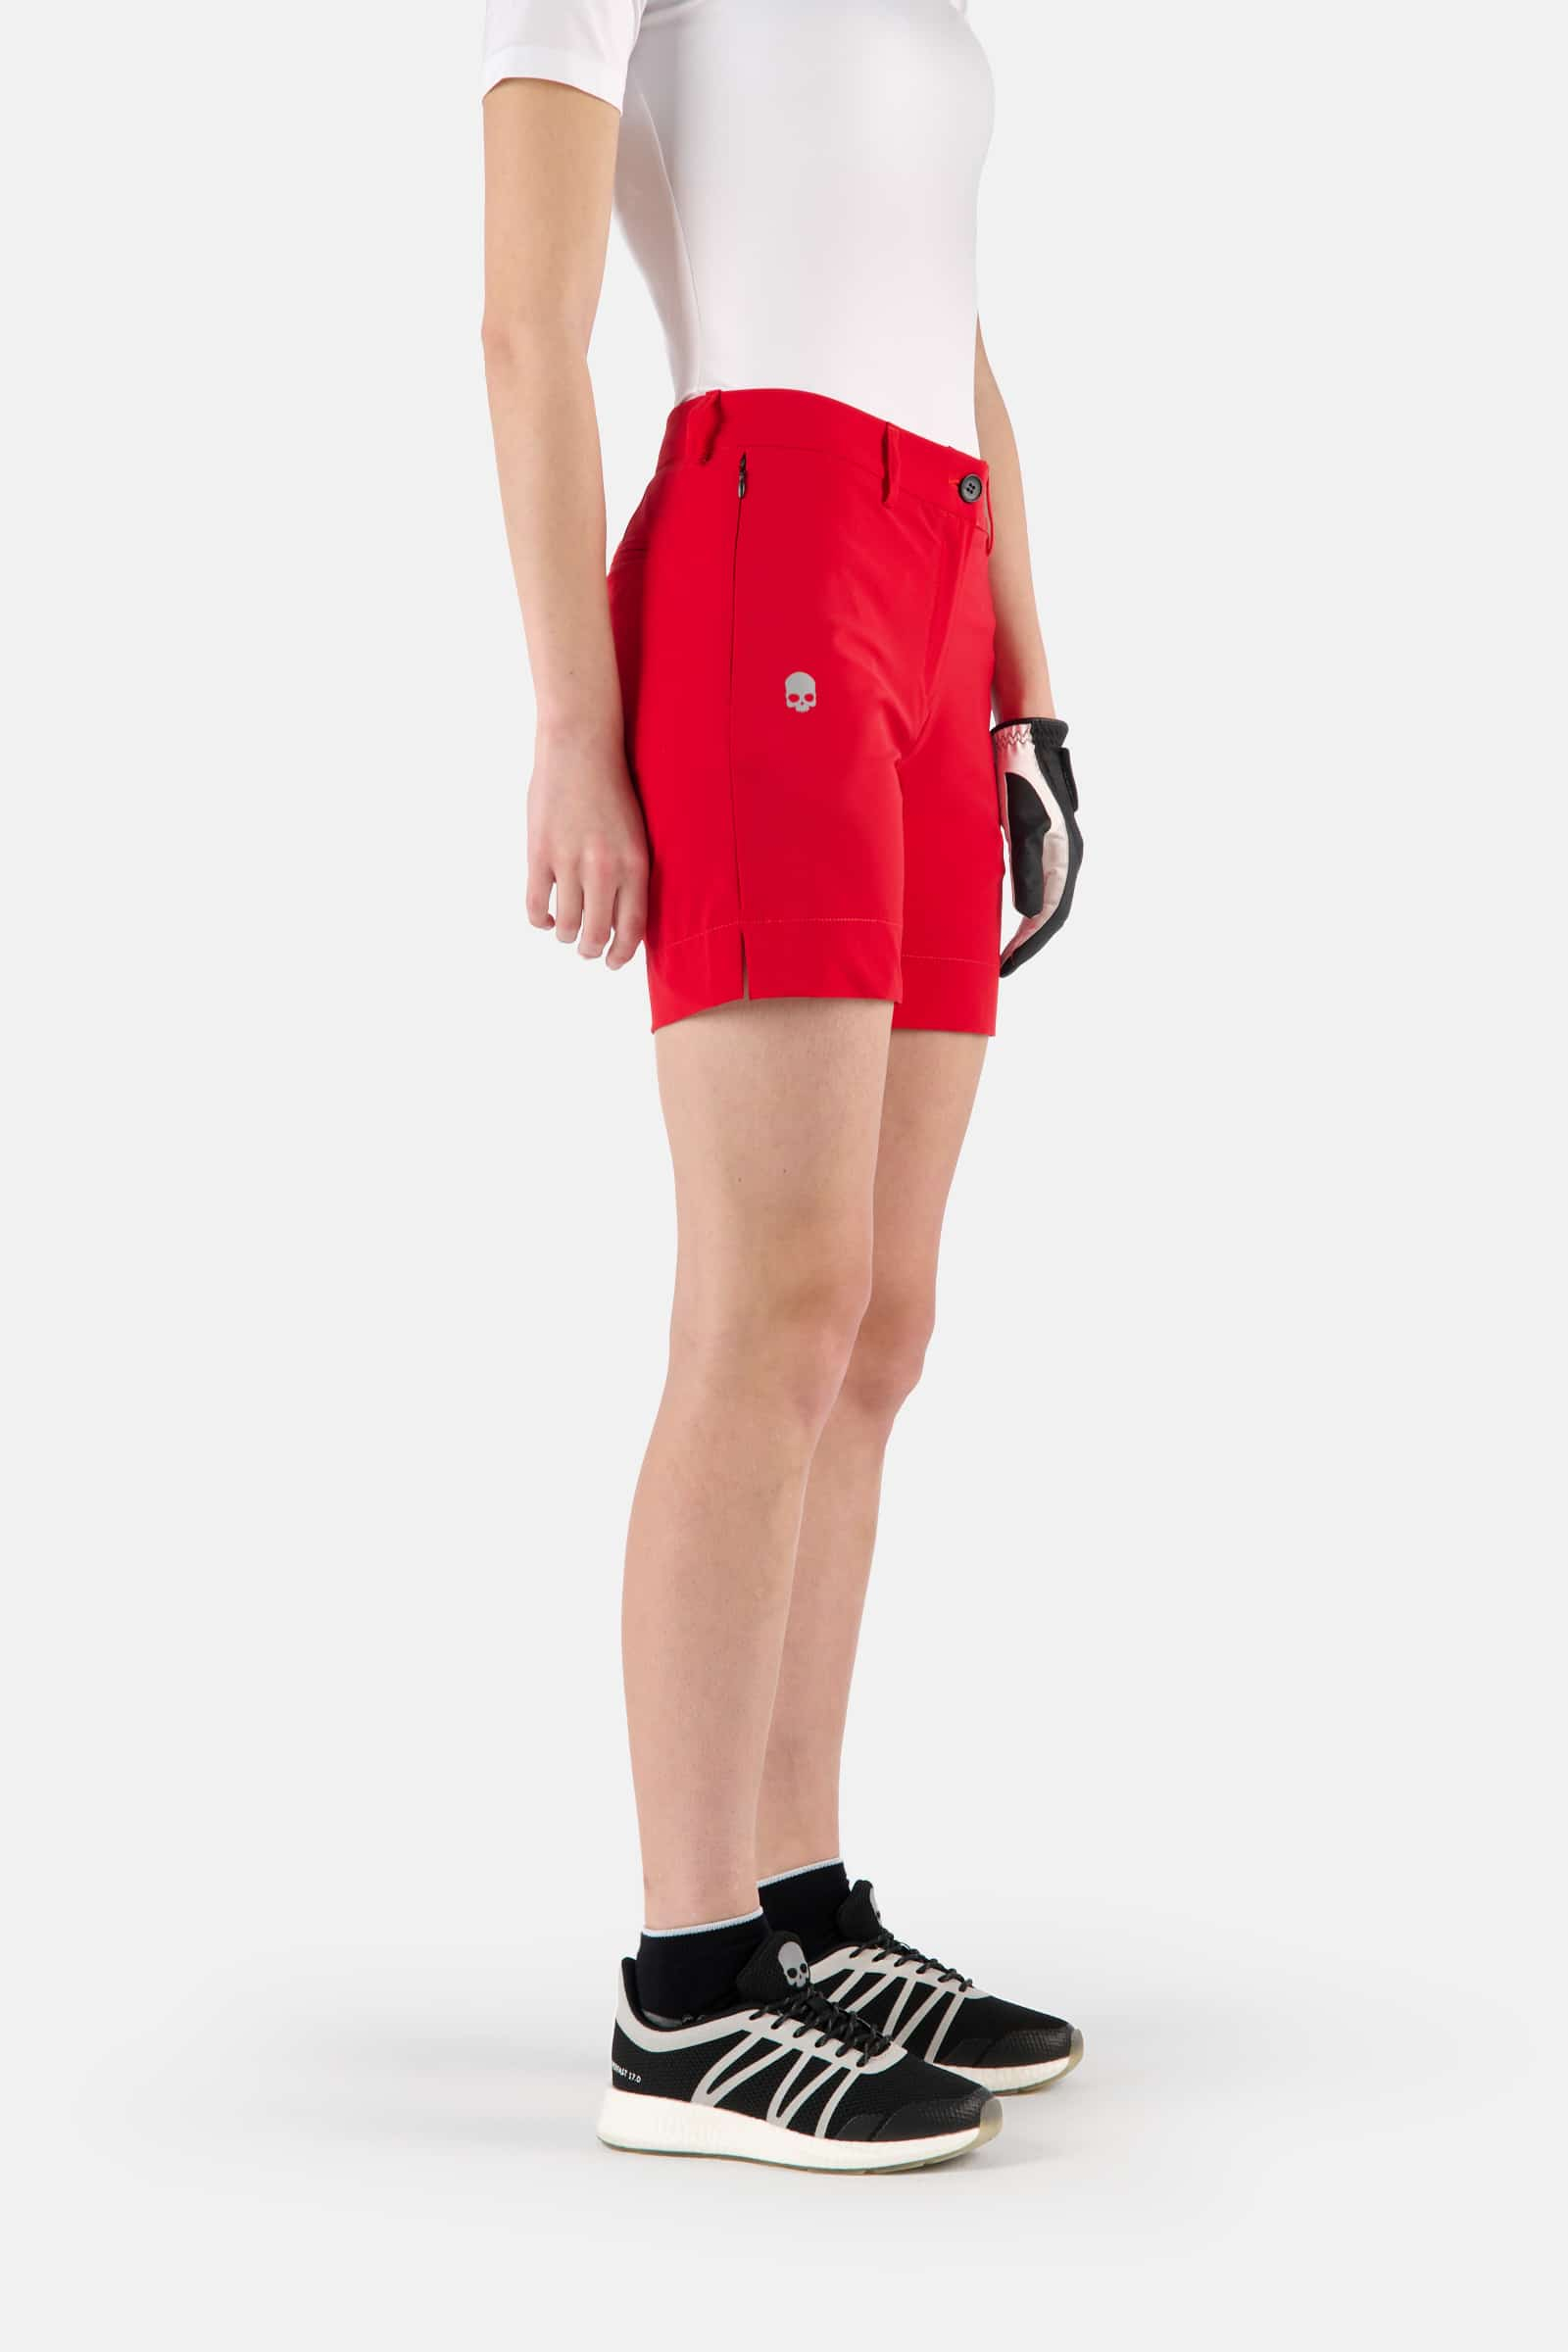 GOLF SHORTS - RED - Hydrogen - Luxury Sportwear